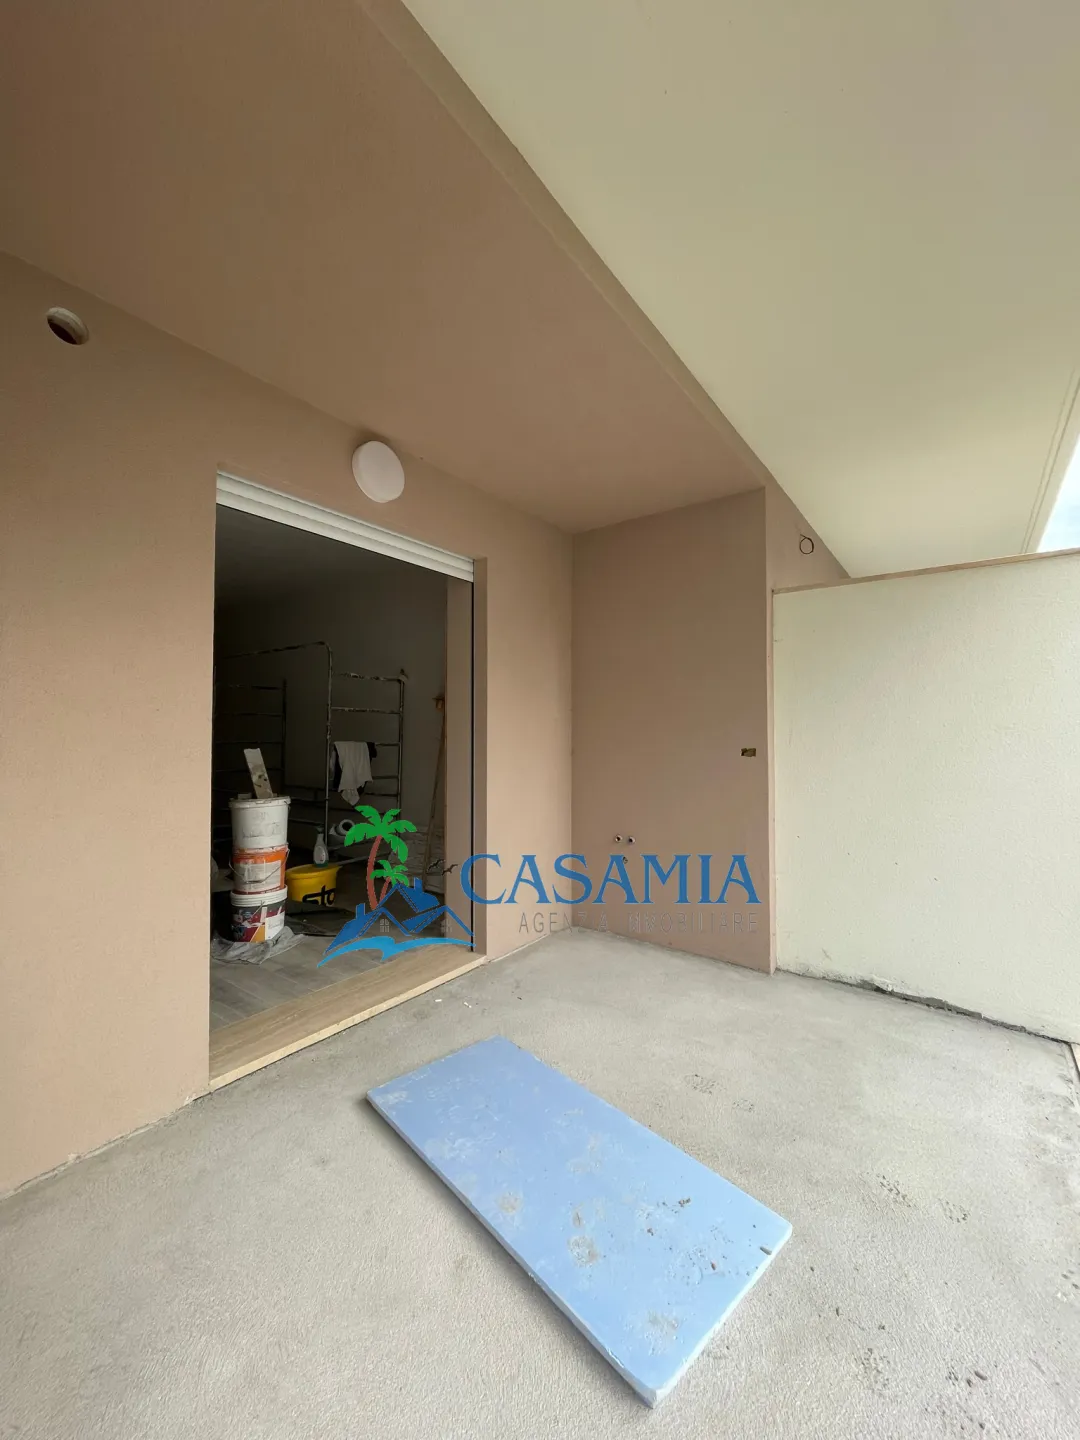 Immagine per Appartamento in vendita a Acquaviva Picena via Giuseppe Mazzini